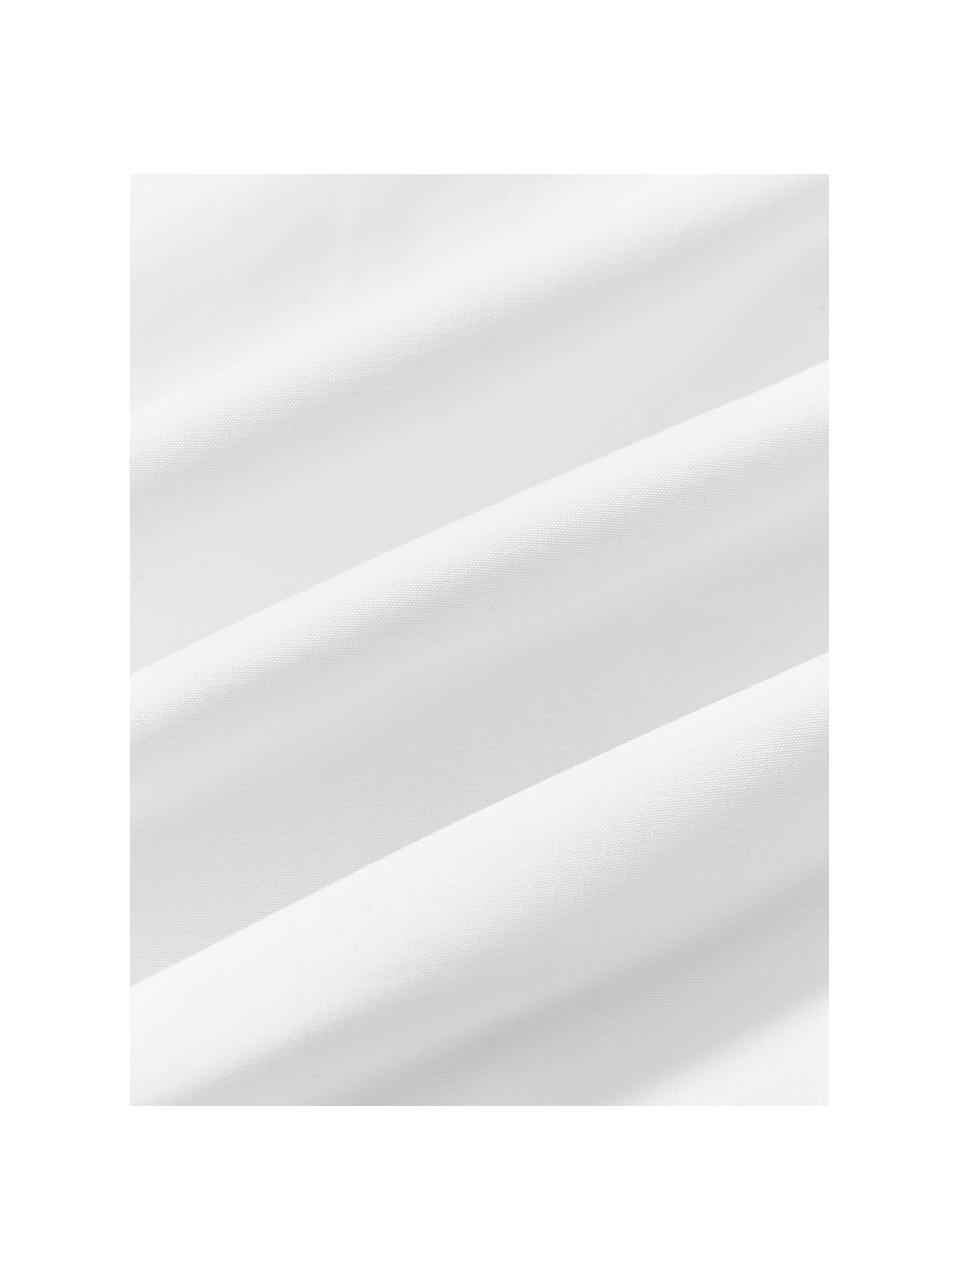 Funda nórdica de percal en look origami Brody, Blanco, Cama 90 cm (155 x 220 cm)